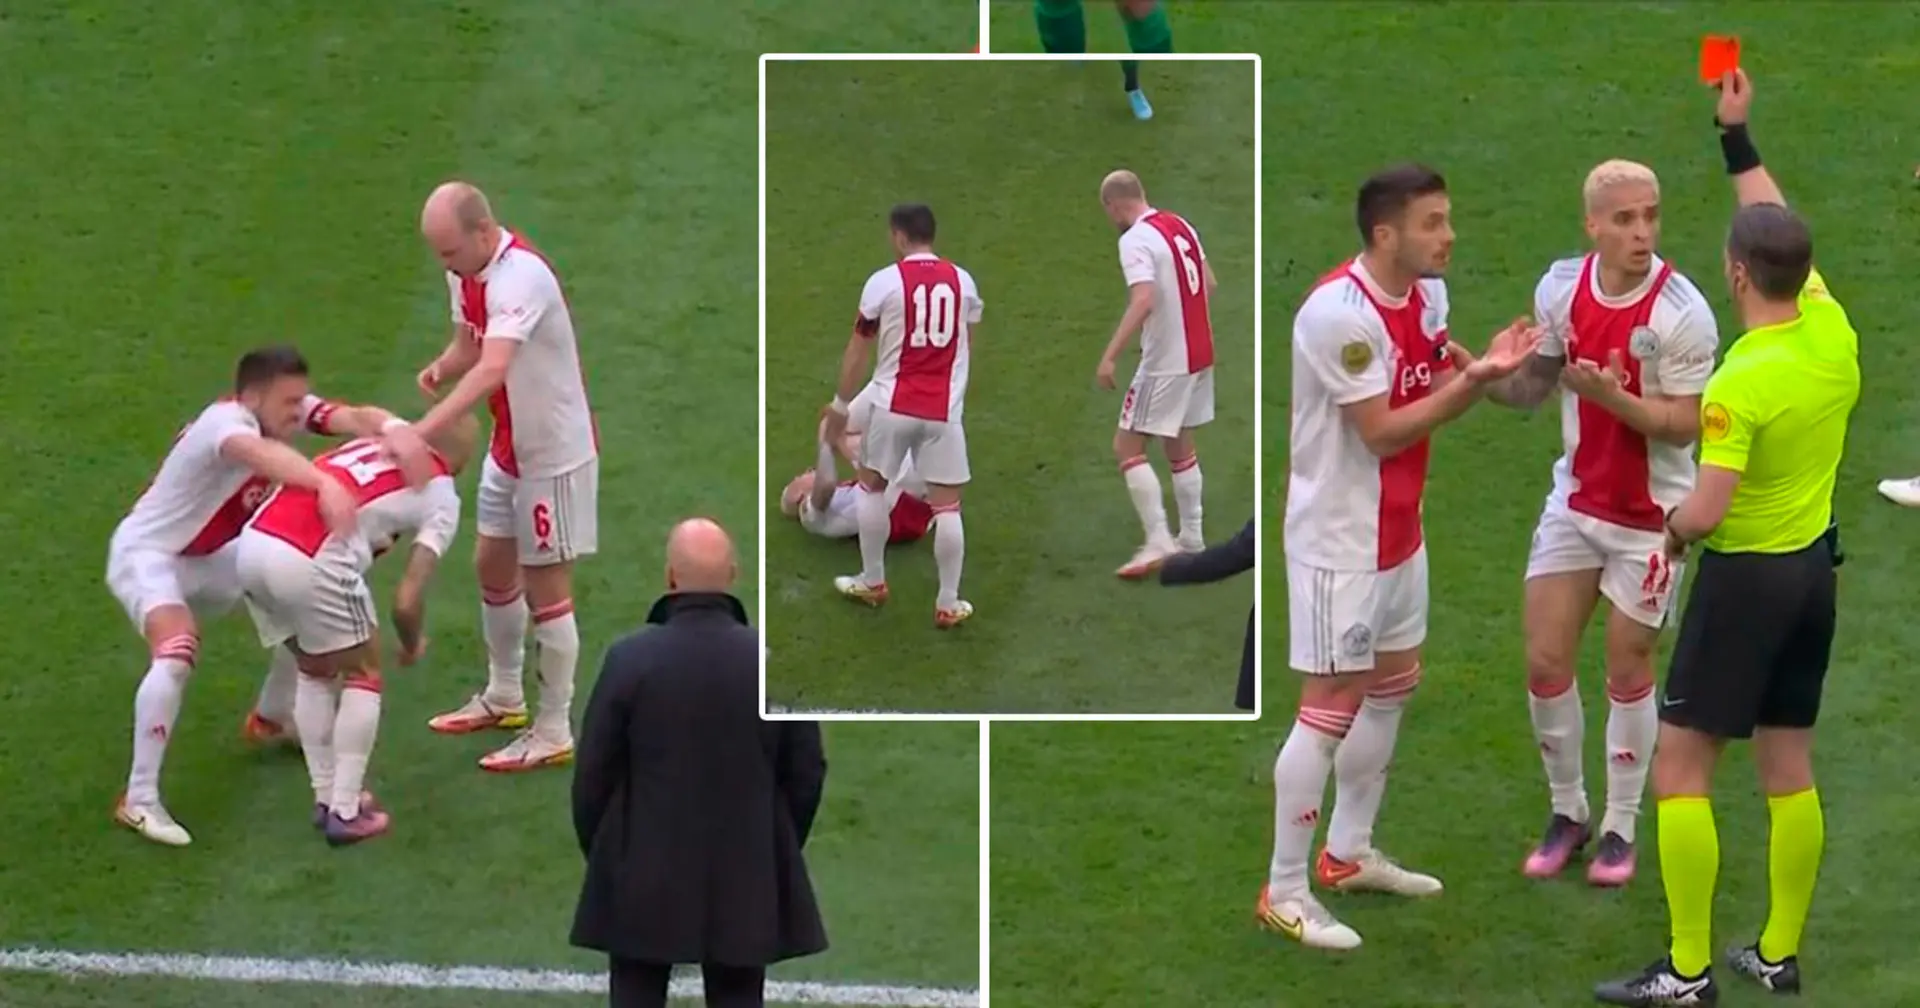 Ajax-Star Antony wird wegen Zeitverschwendung vom Platz gestellt, nachdem er von Dusan Tadic gepackt wurde